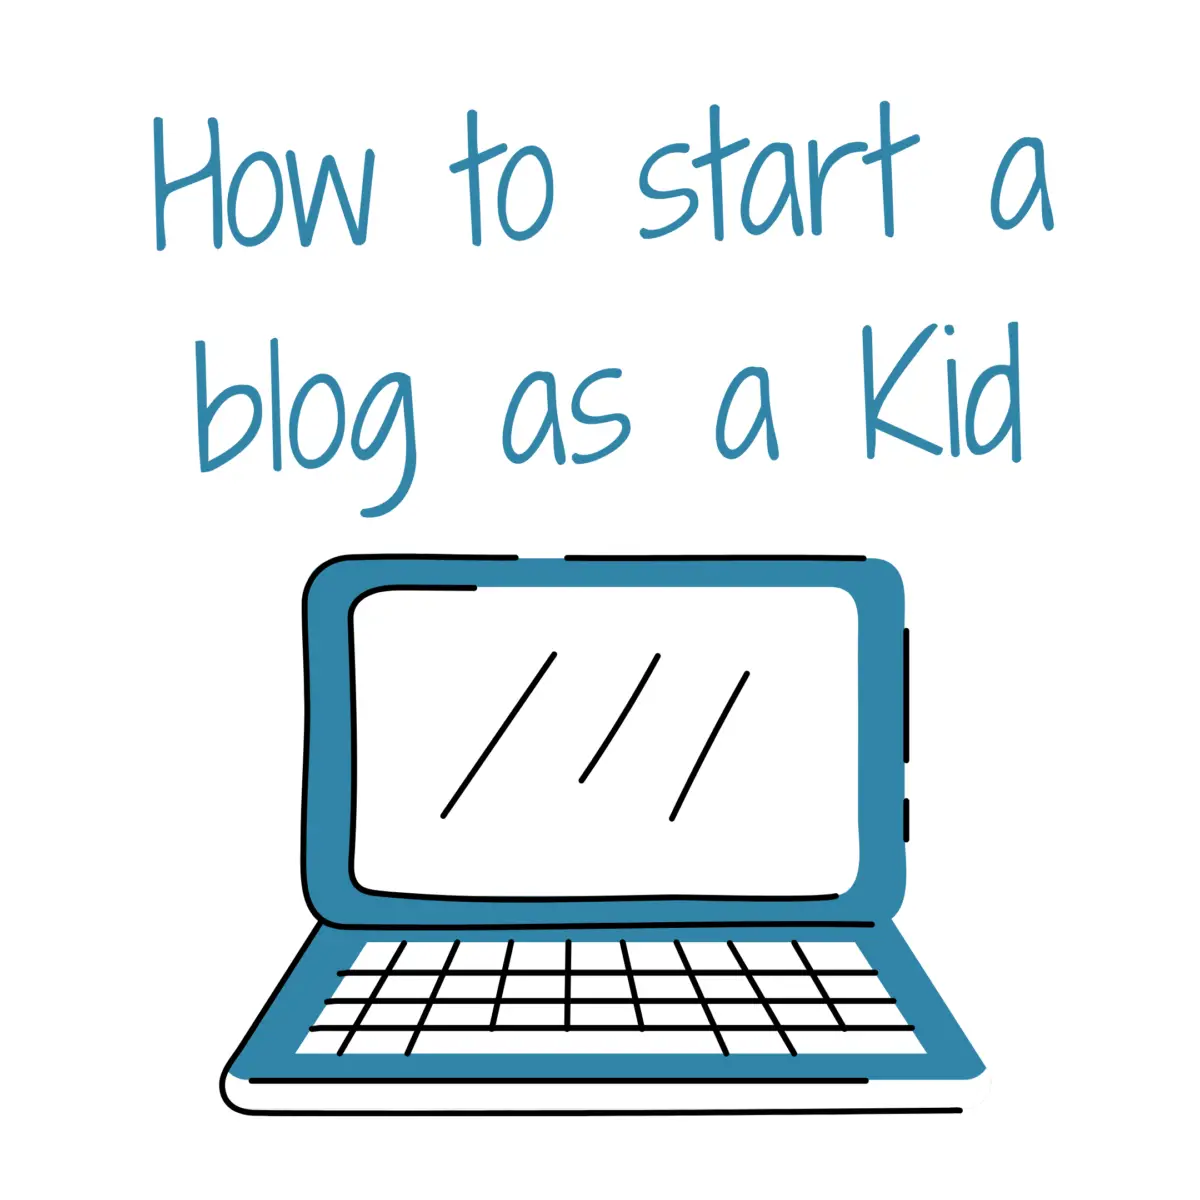 Start a blog as a kid